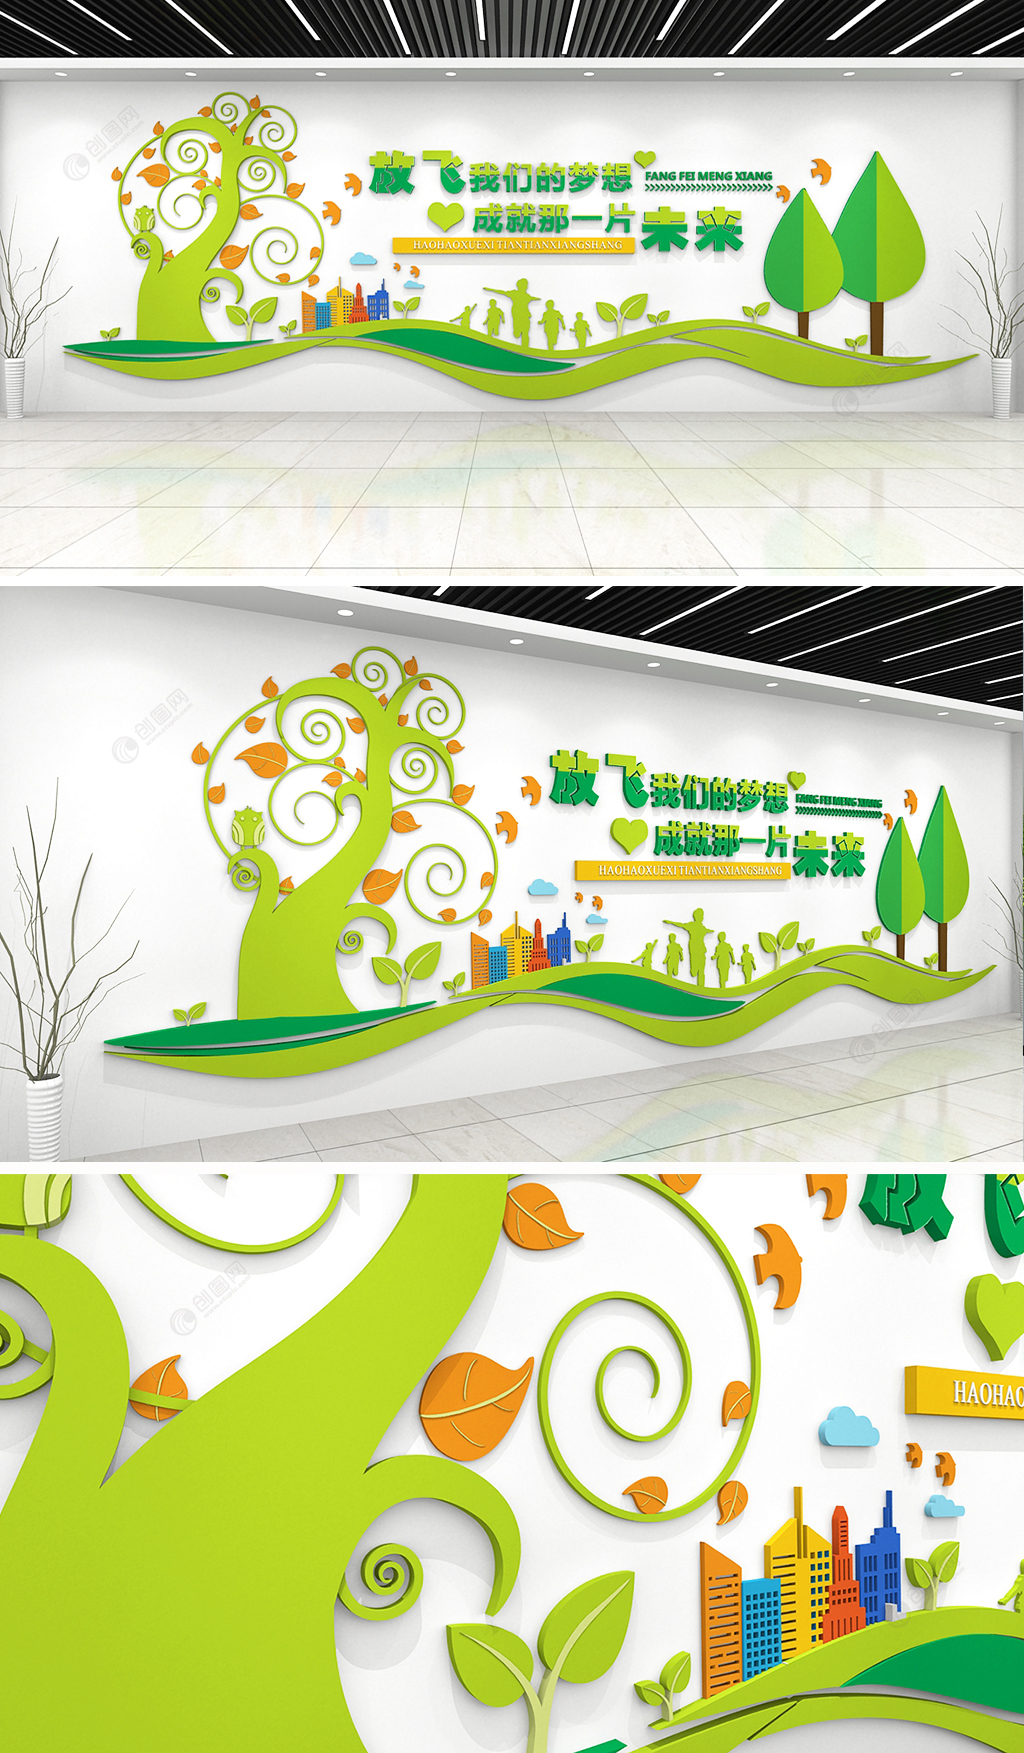 原创绿色校园文化幼儿园 班级教室环创文化墙形